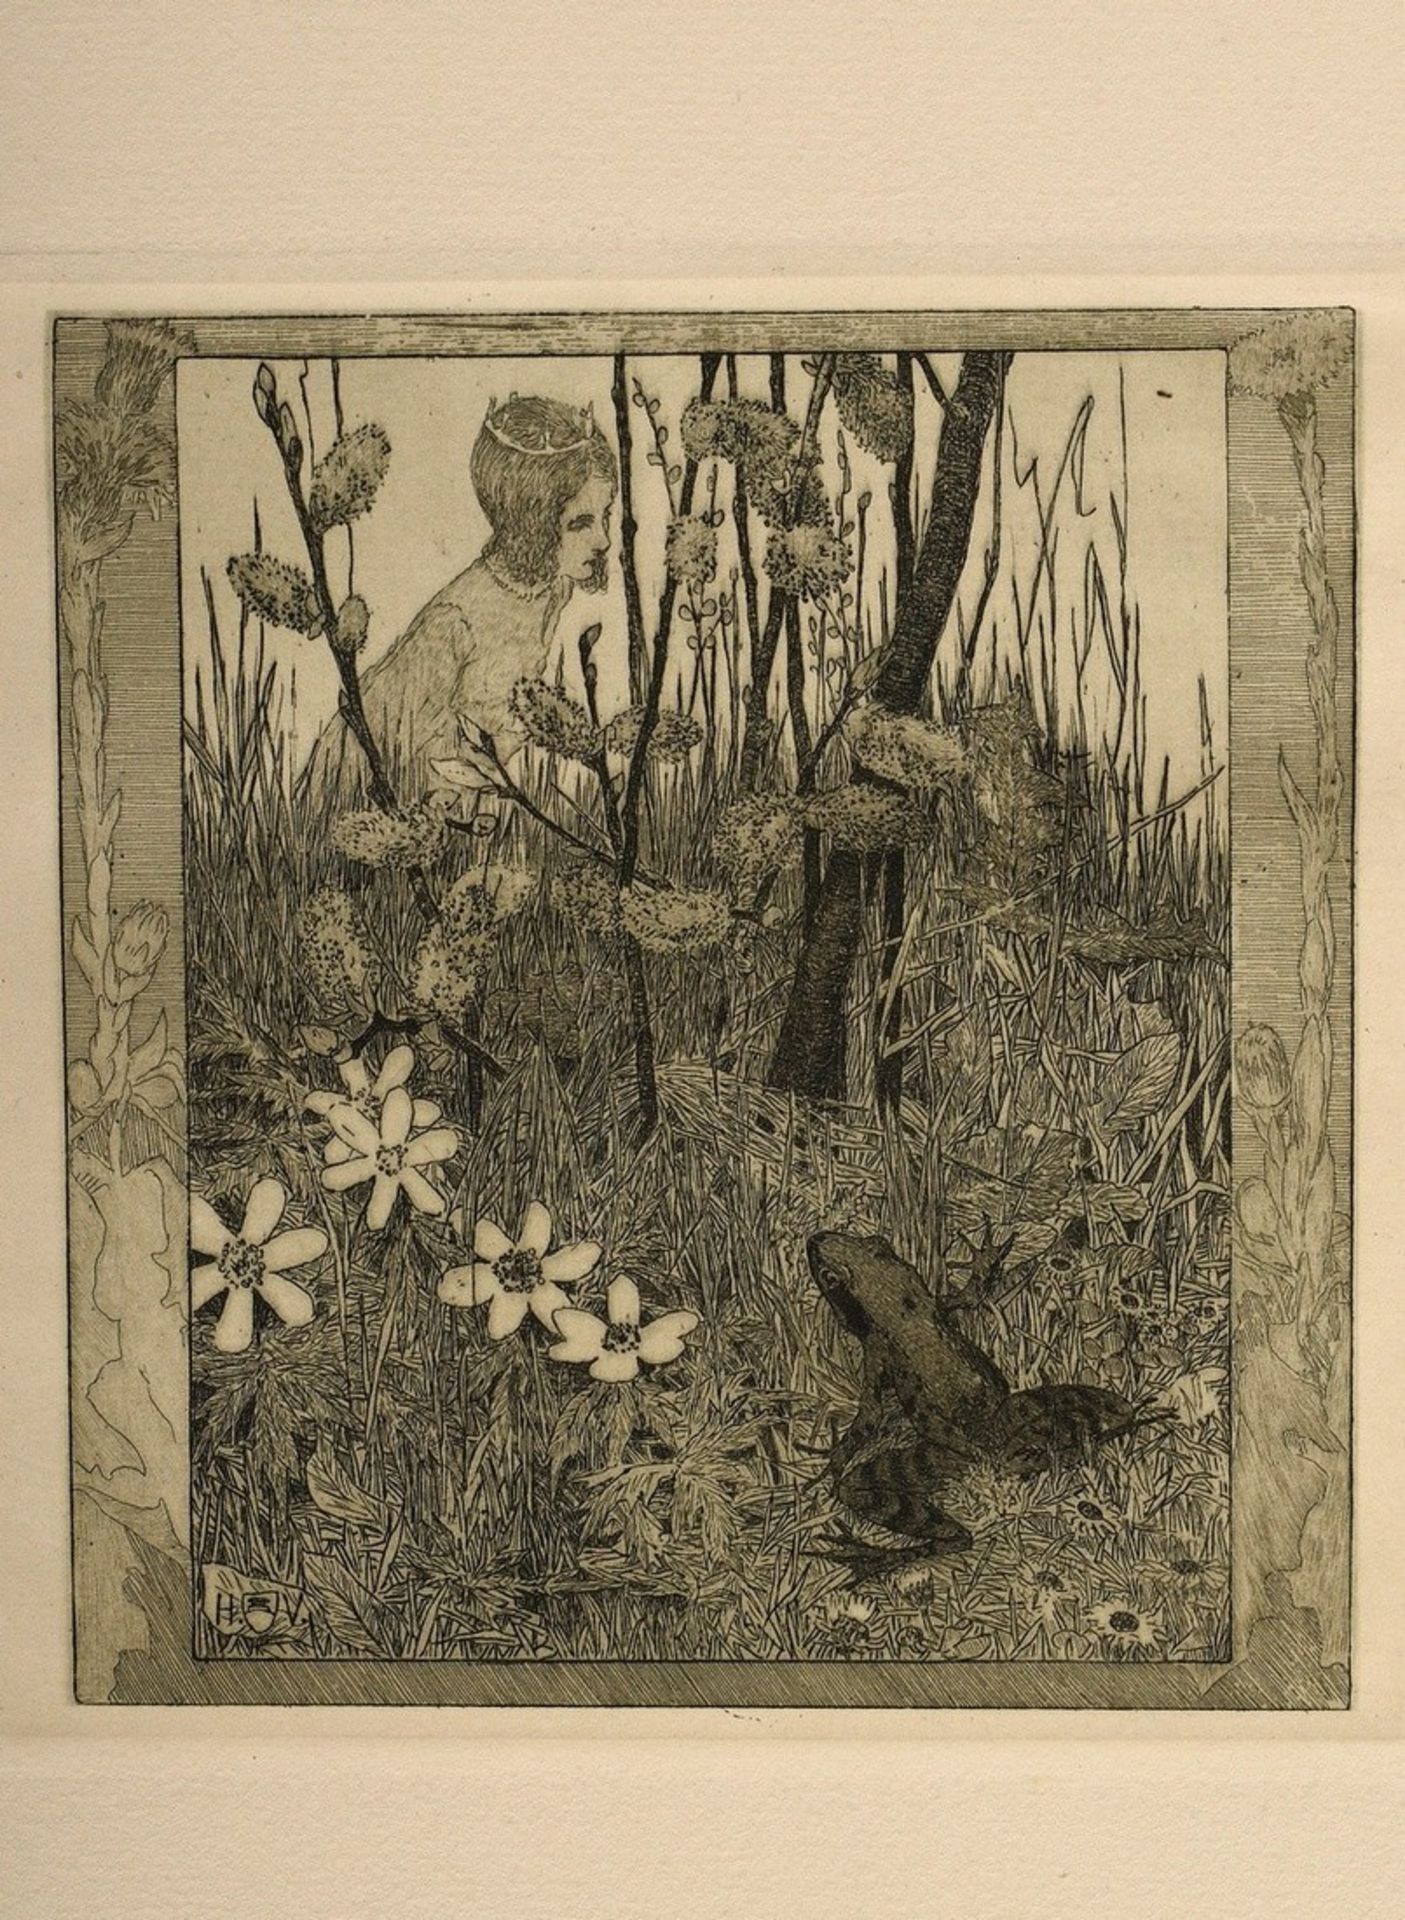 Vogeler, Heinrich (1872-1942) "An den Frühling" 1899/1901, Mappe mit 10 Radierungen und Vorblatt, P - Bild 7 aus 25